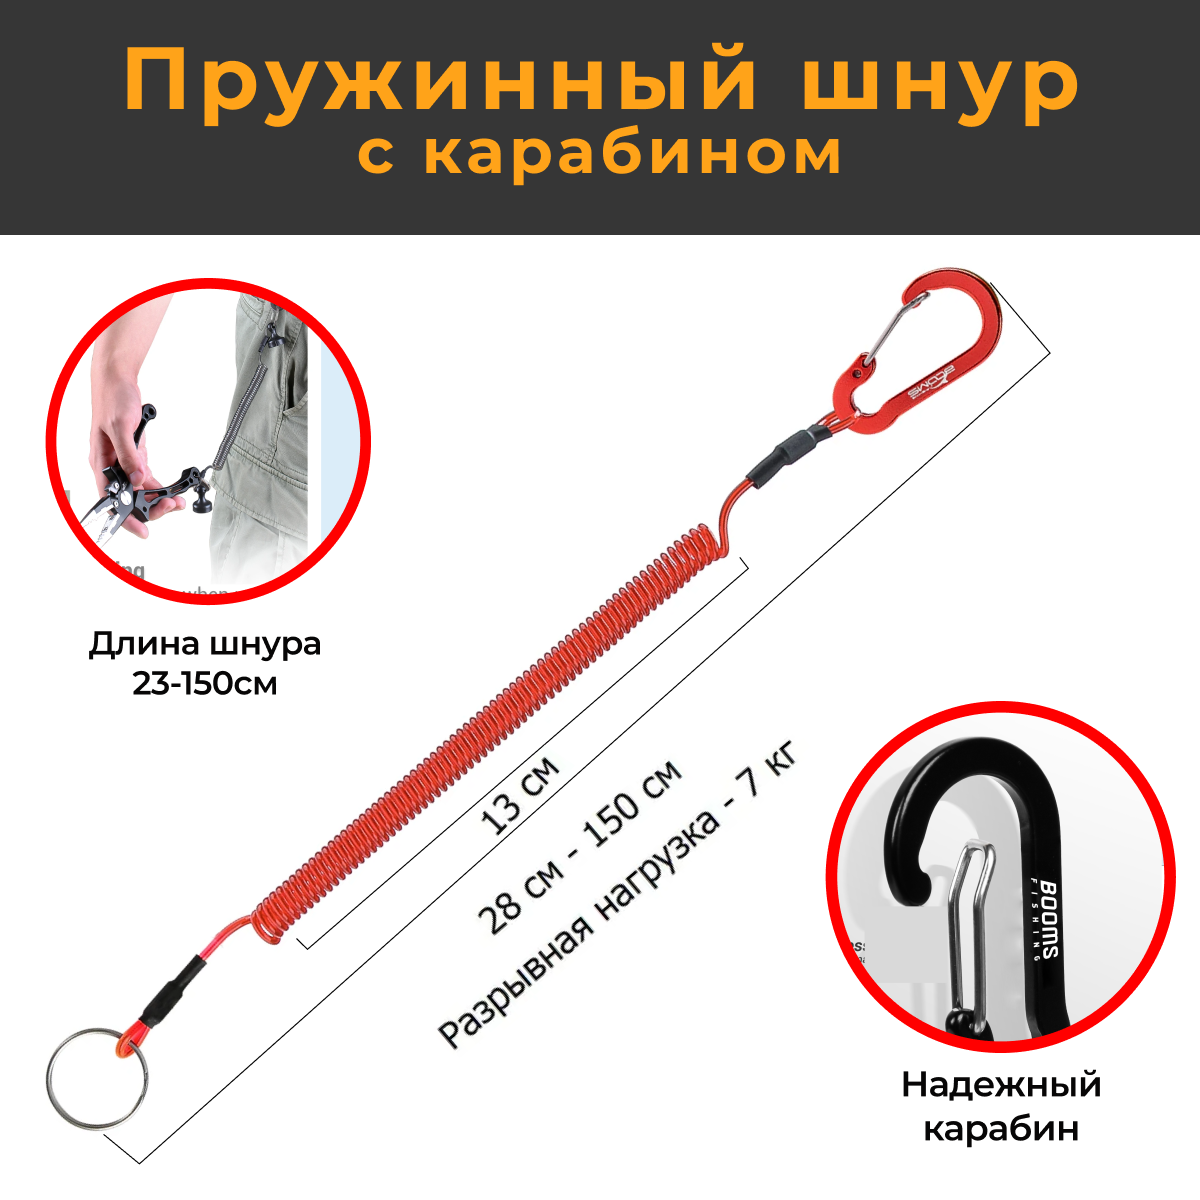 Профессиональный Пружинный шнур с карабином 150 см красный страховочный тросик для инструментов и ножниц